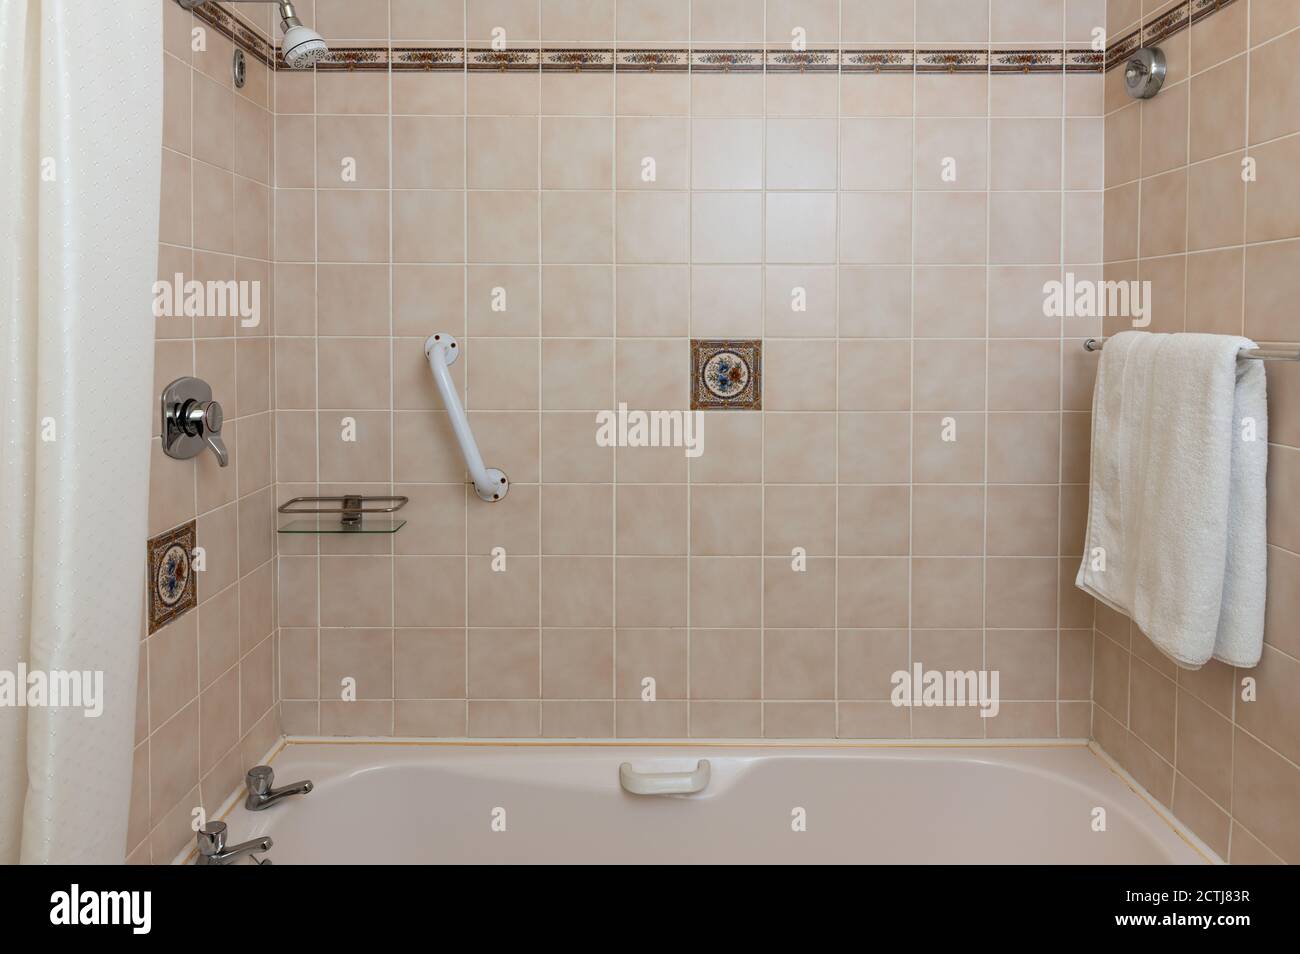 Vue sur l'intérieur de la salle de bains avec baignoire dans les clients indépendants maison et appartement de chambres d'hôtes Banque D'Images